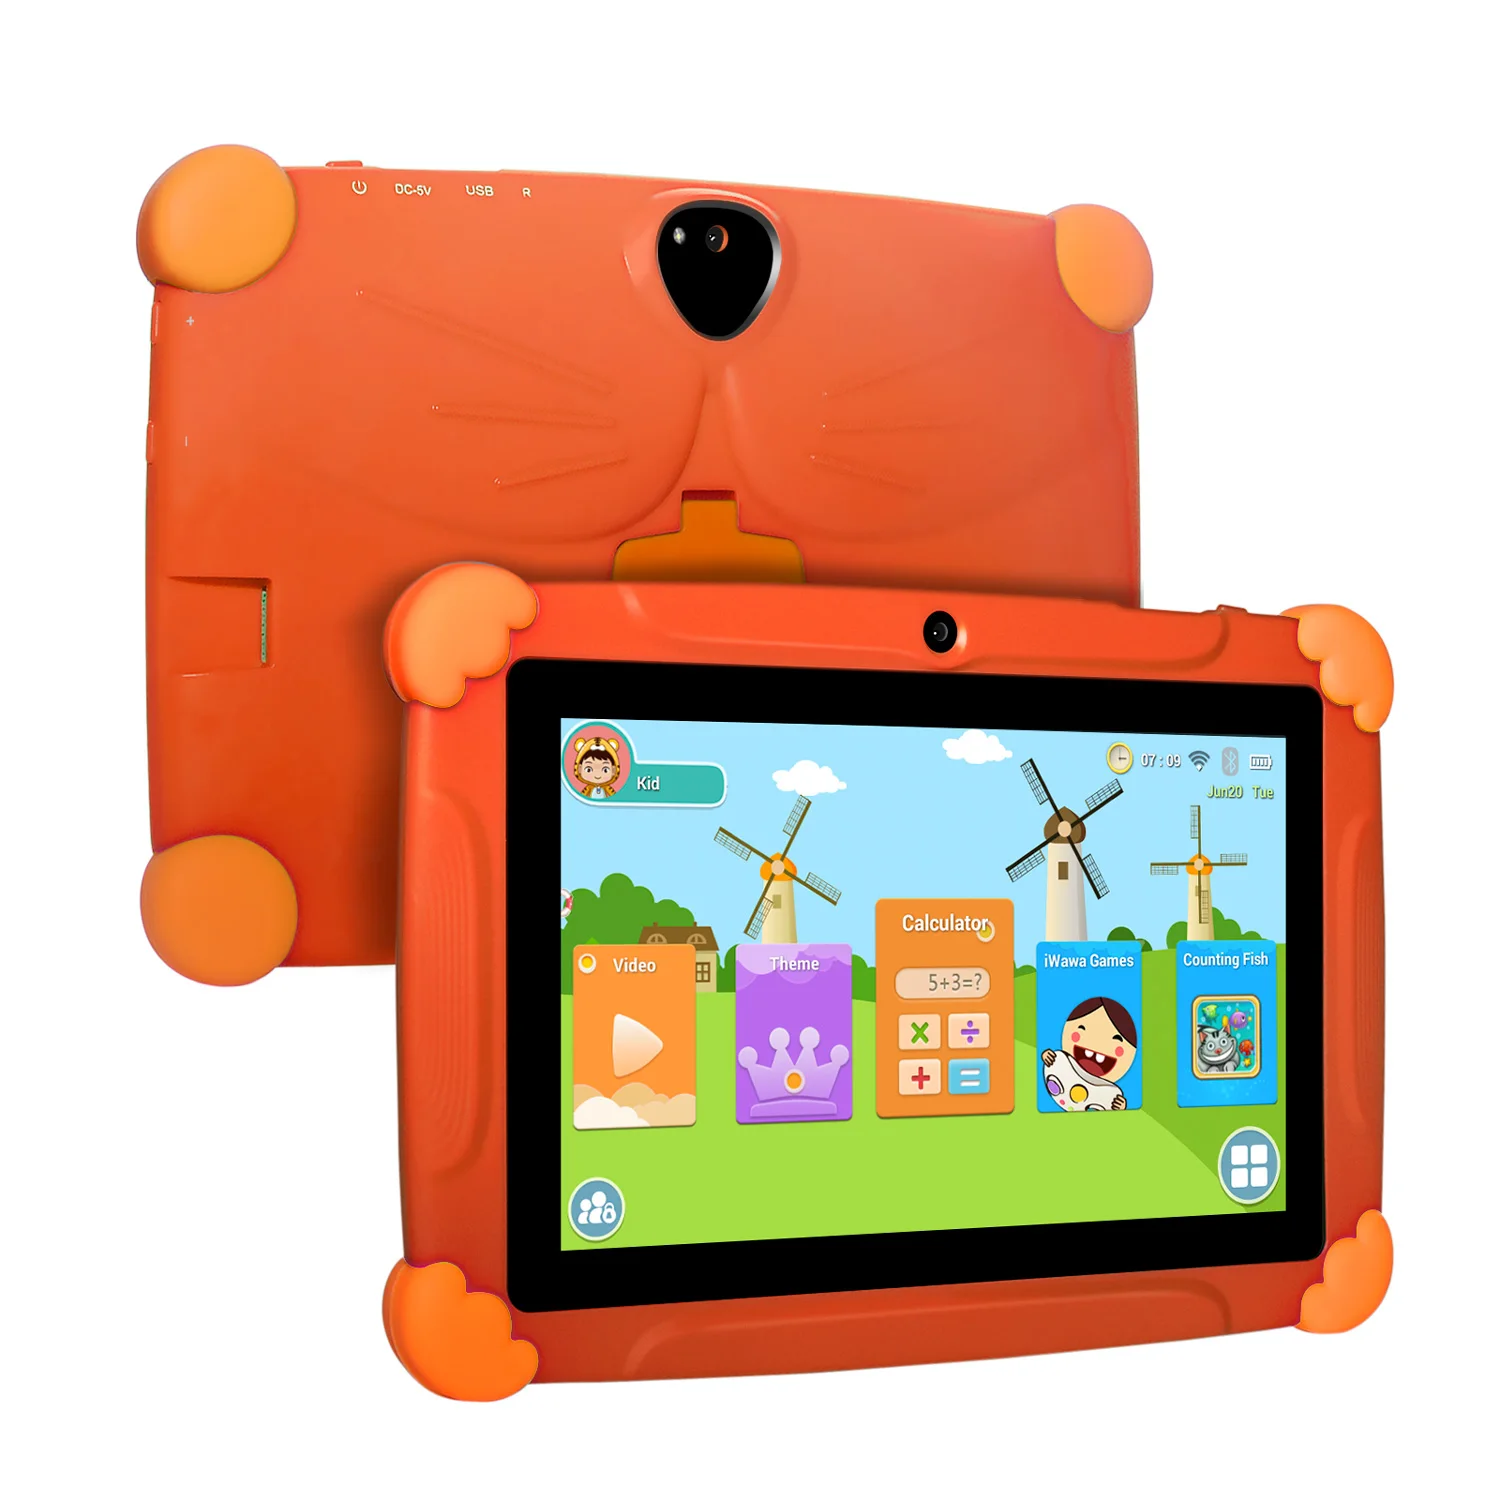 XGODY T703 Детский Рождественский подарок планшет 7 дюймов экран Android 8,10 версия модный портативный планшет 1G+ 16G сенсорный планшет - Комплект: Комплект 4